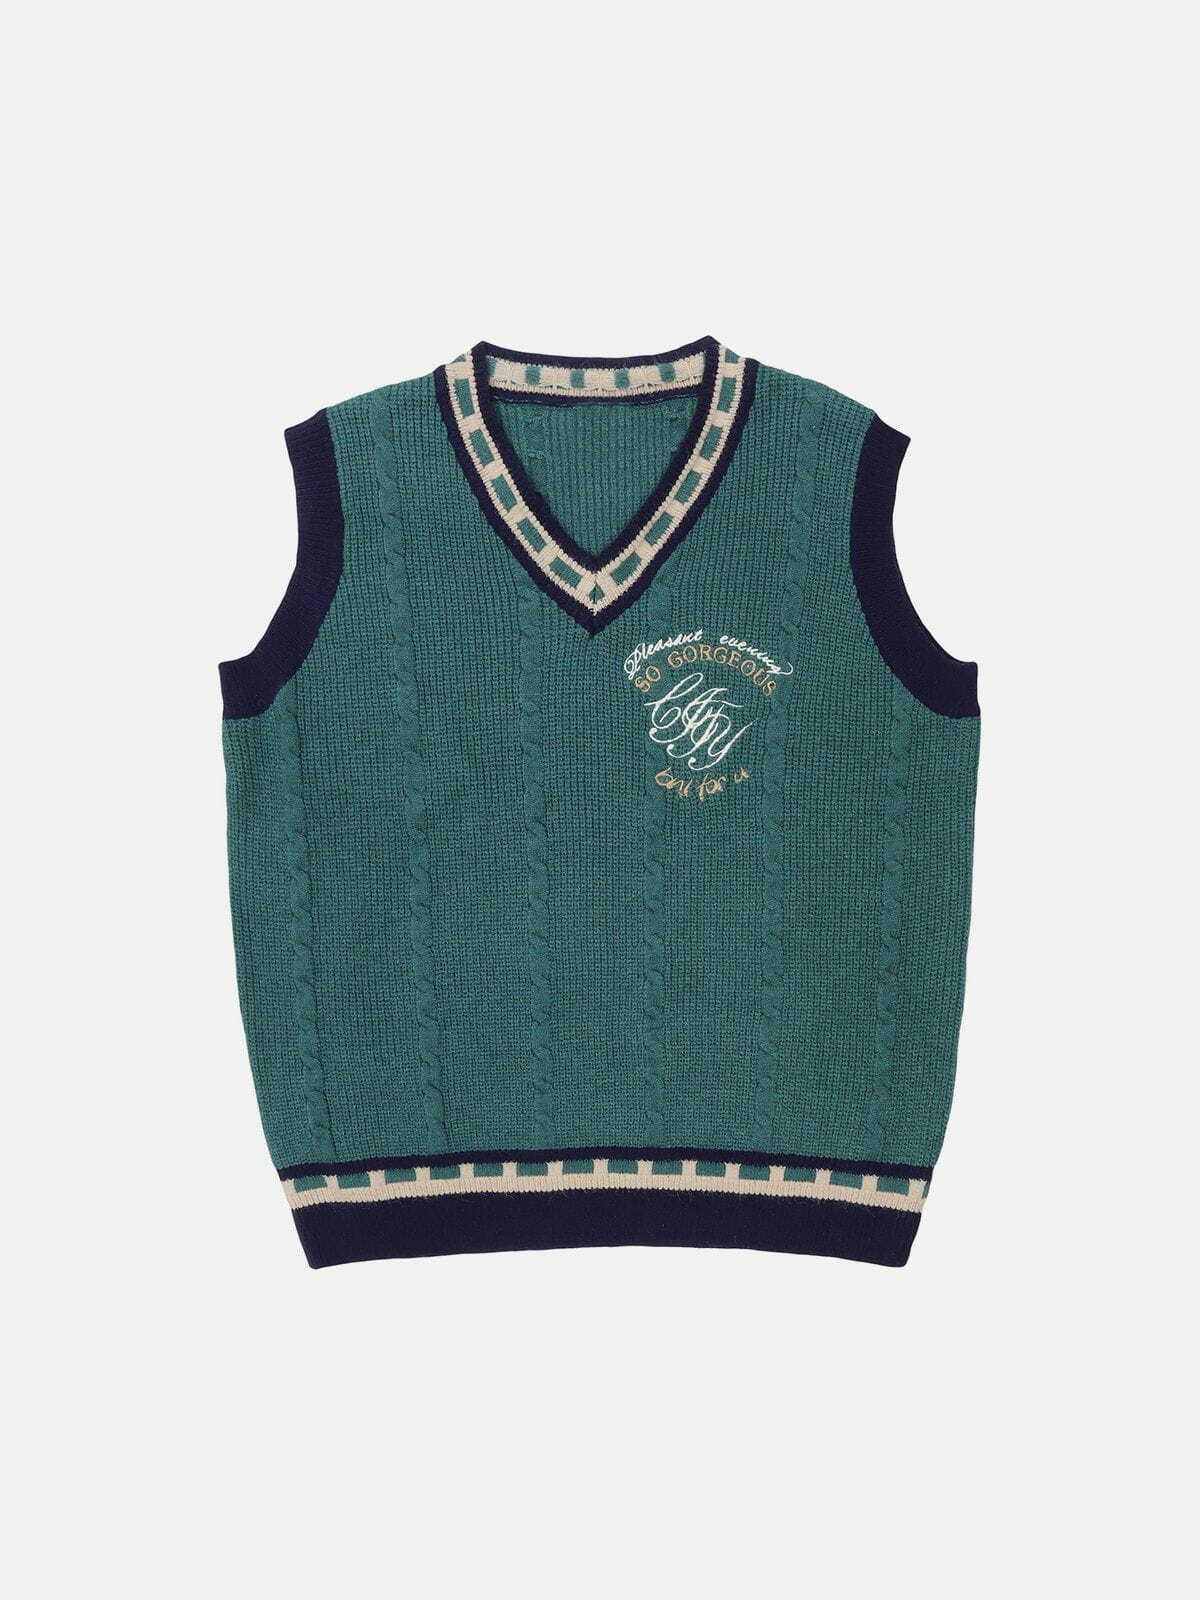 embroidered patchwork sweater vest urban fashion statement 7488